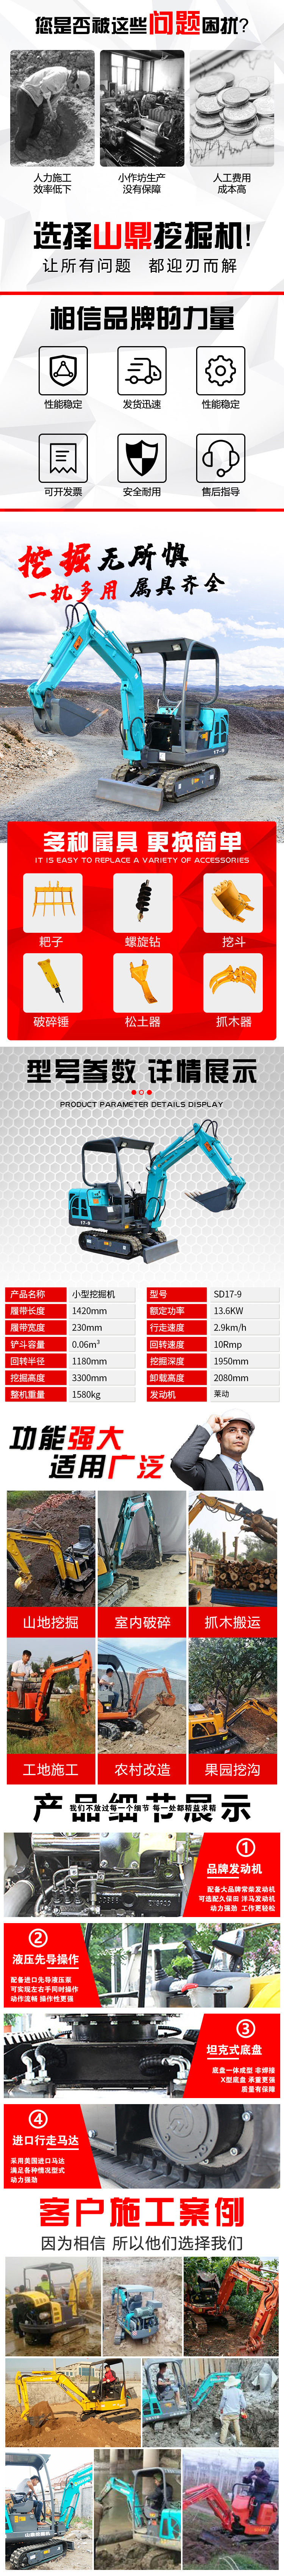 山鼎机械SD17-9小型挖掘机